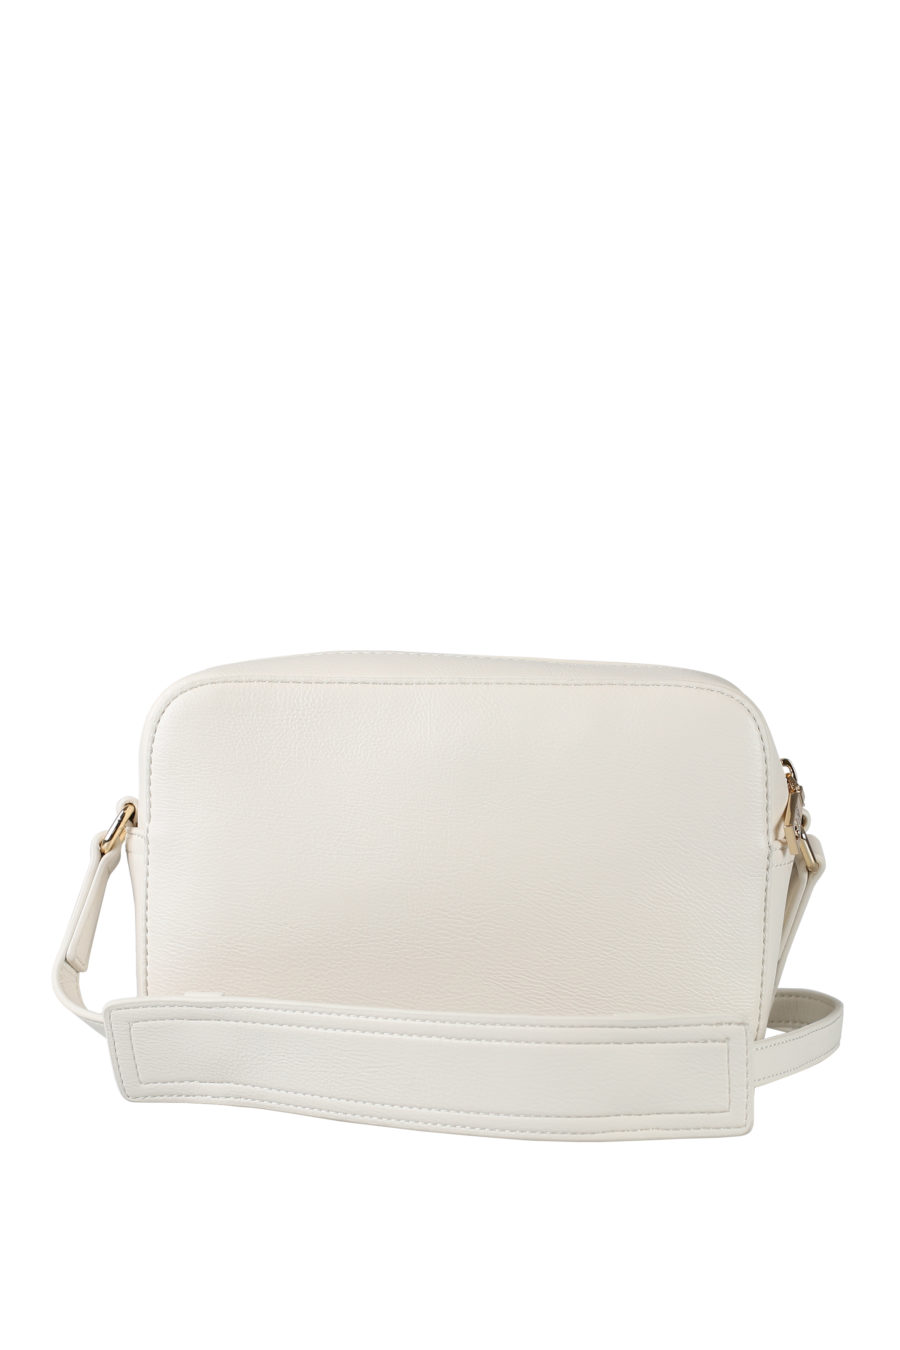 Bolso blanco "camera bag" con logo bordado - IMG 1539